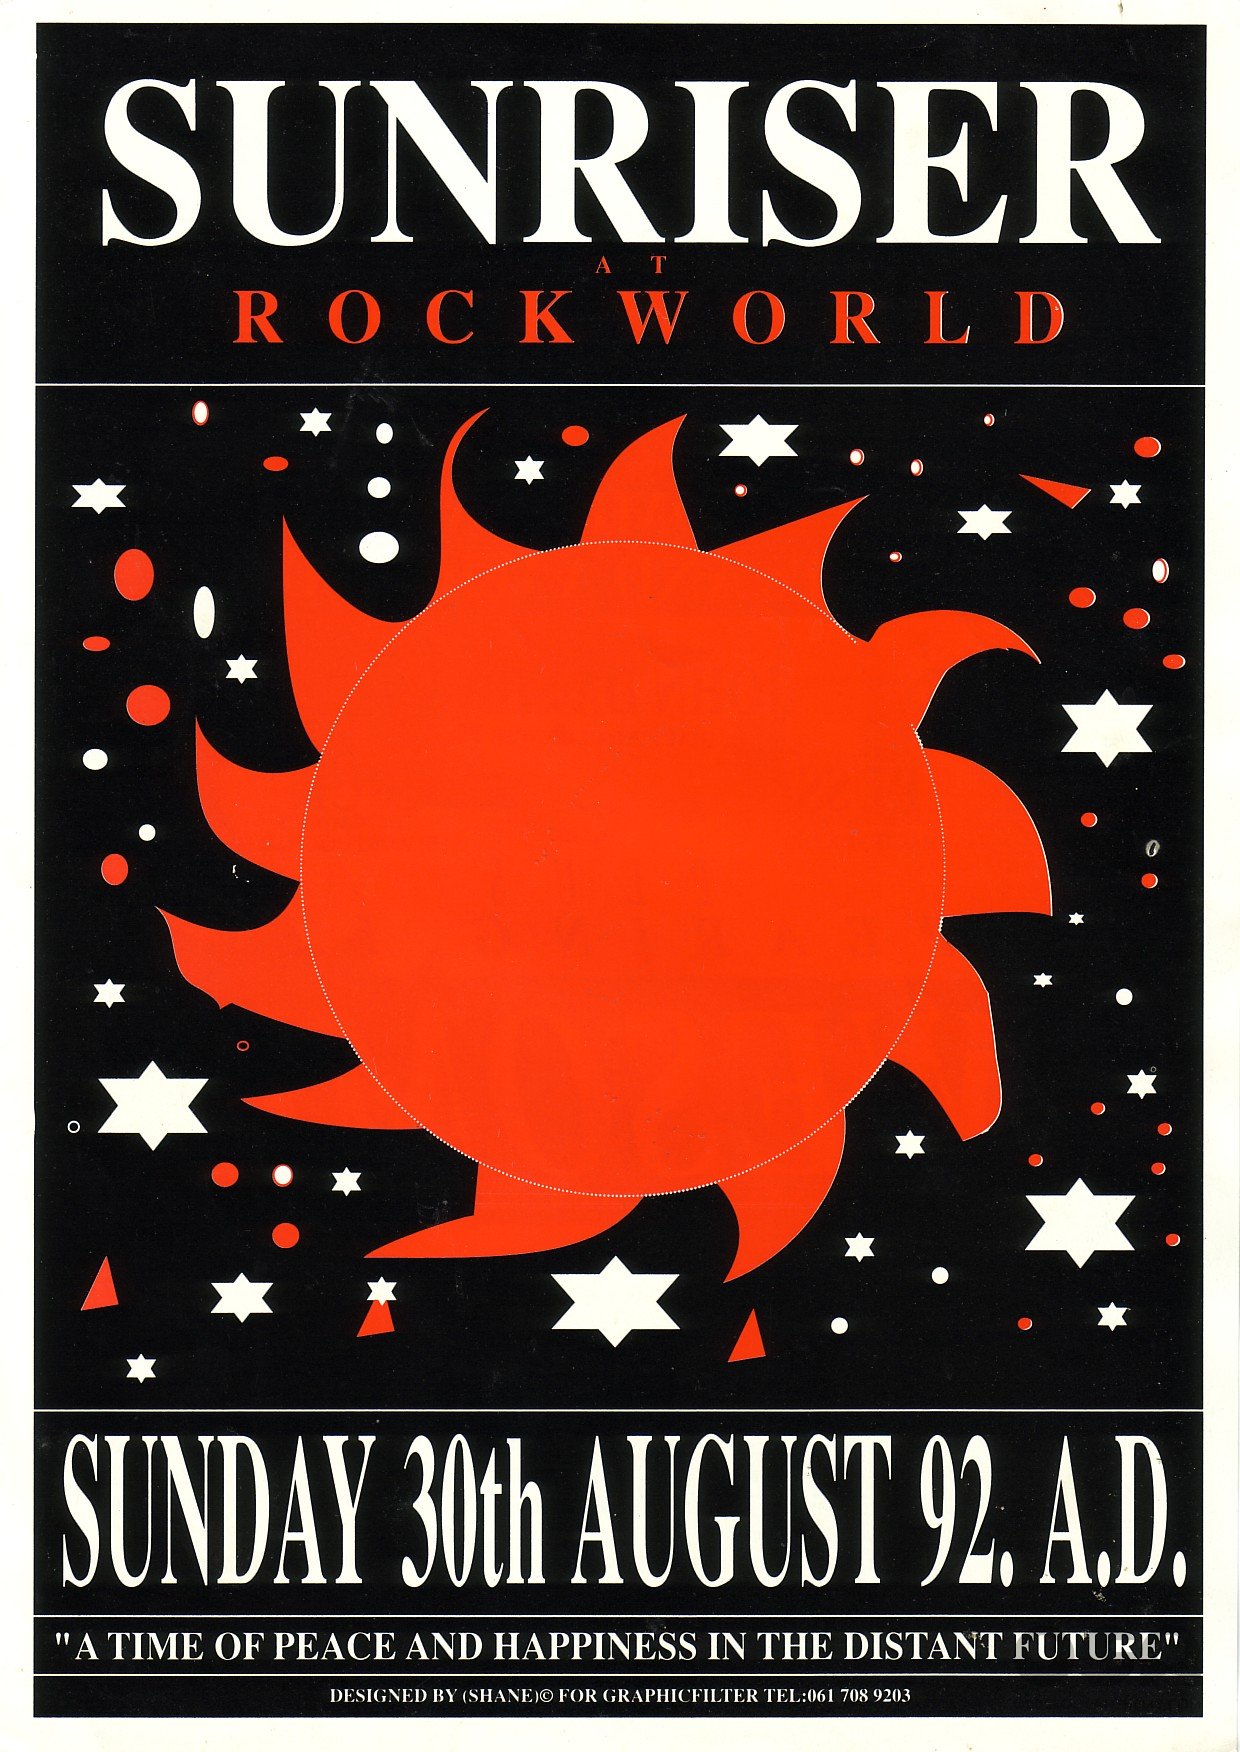 1_Rockworld_Sunriser_Manchester_Sun_30th_Aug_1992.jpg